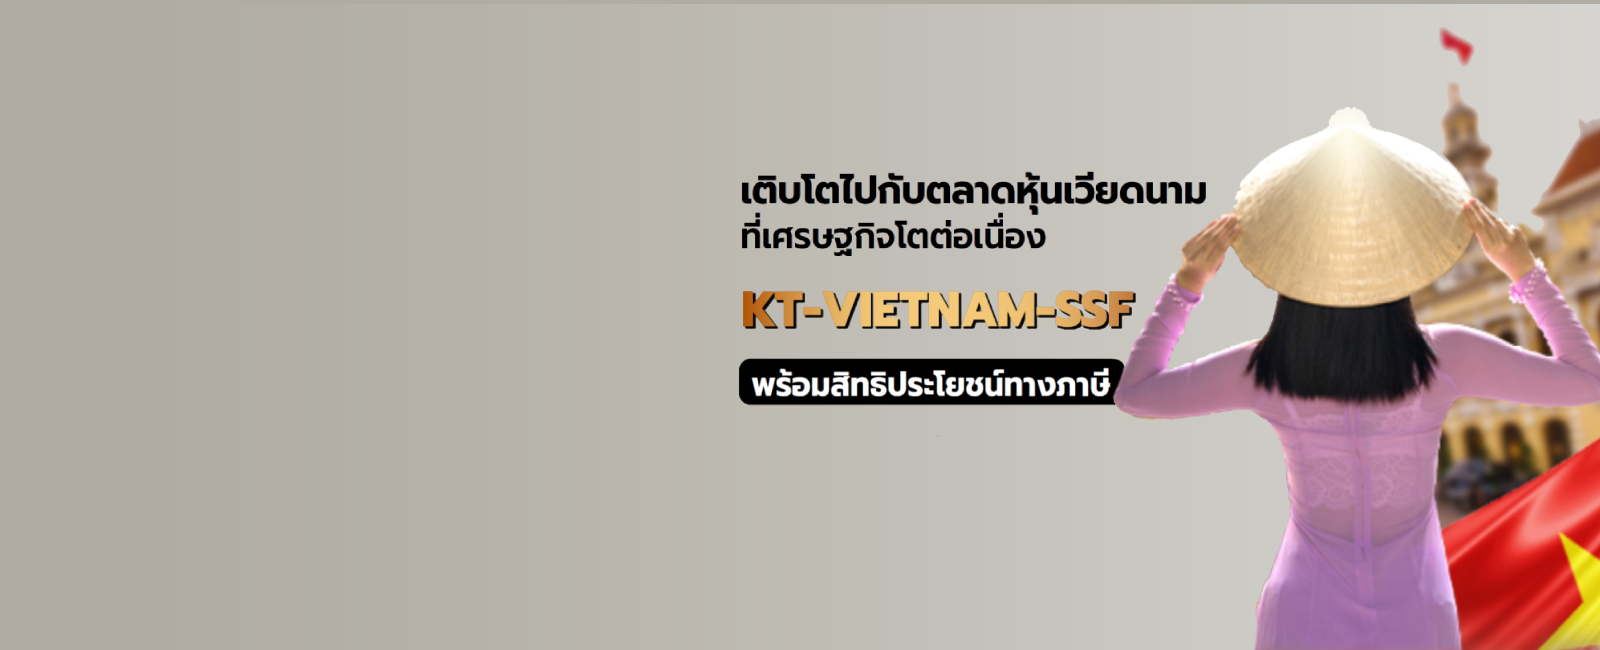 ลงทุนกองทุนรวมเวียดนาม KT-VIETNAM desktop banner 